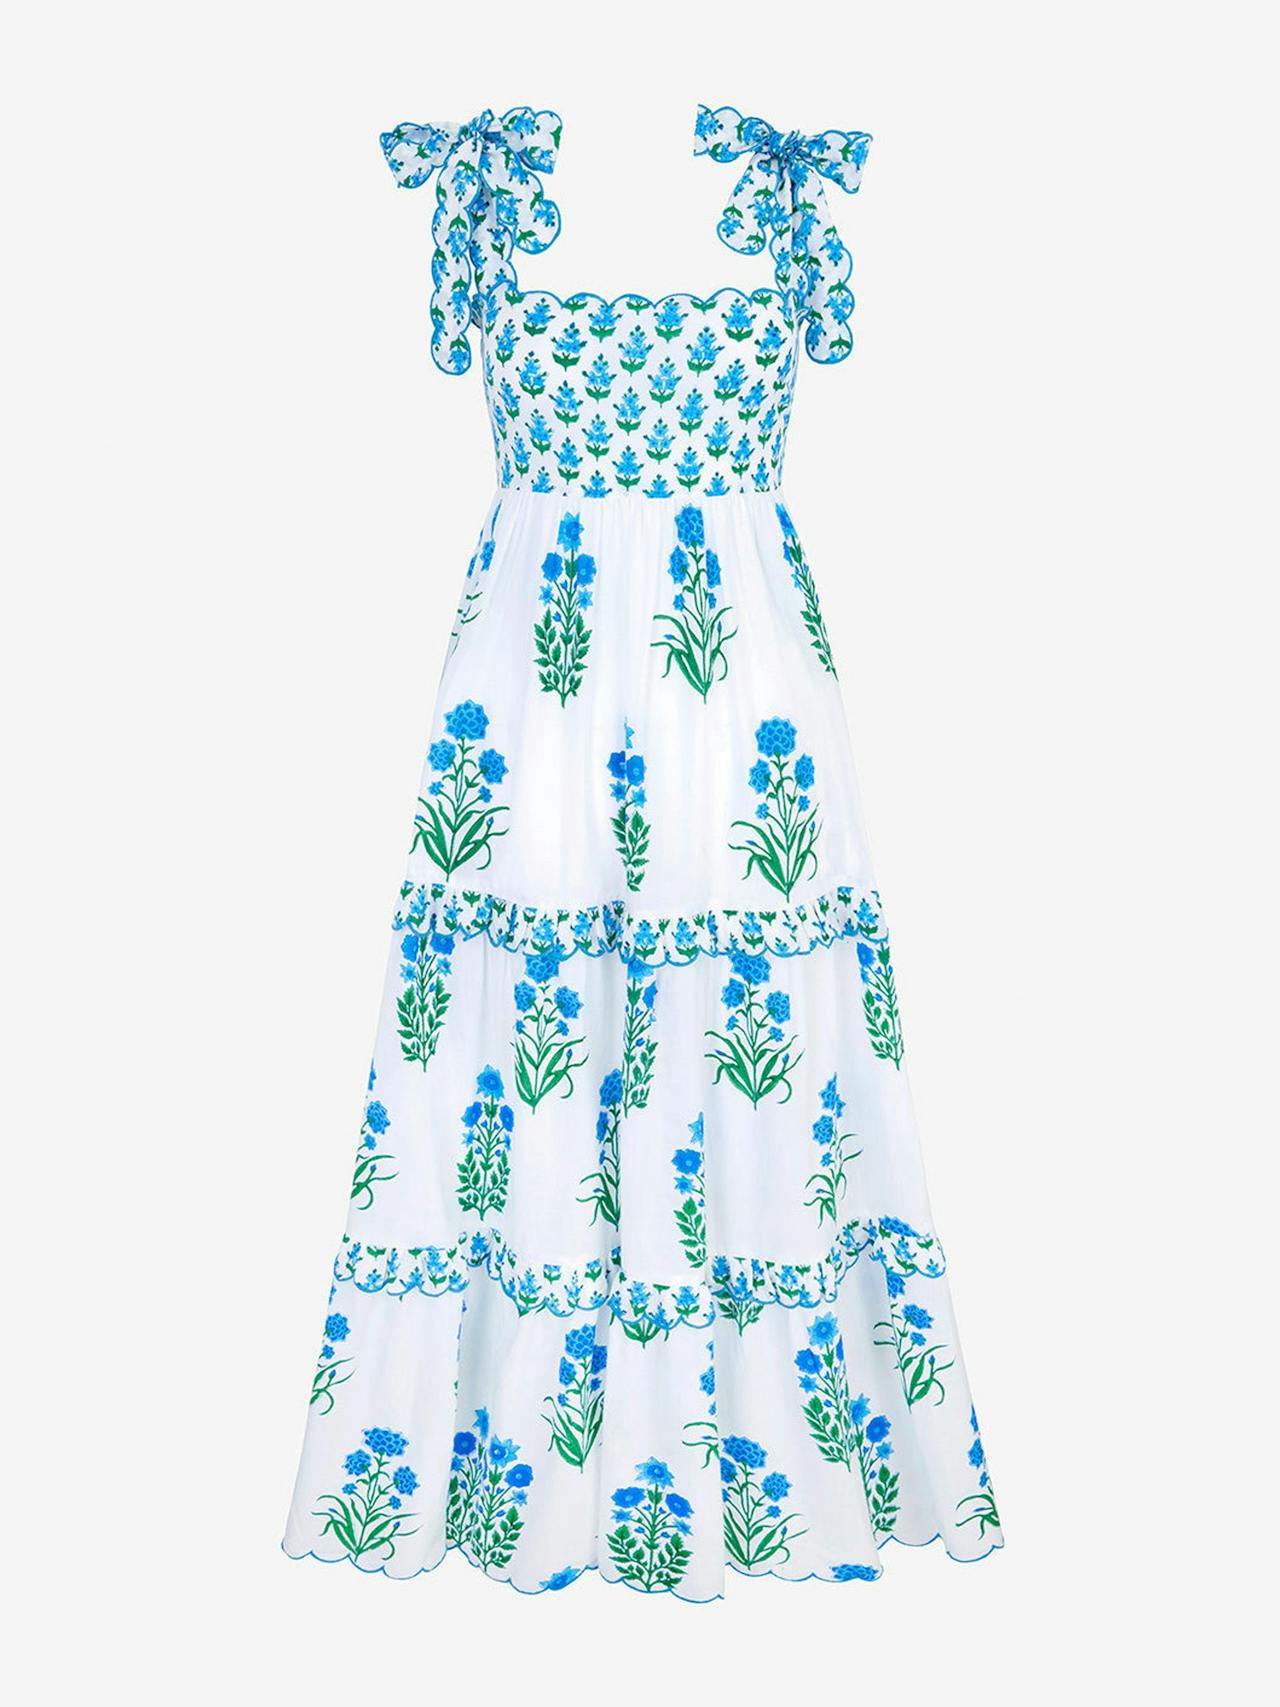 Aqua botanical athens dress